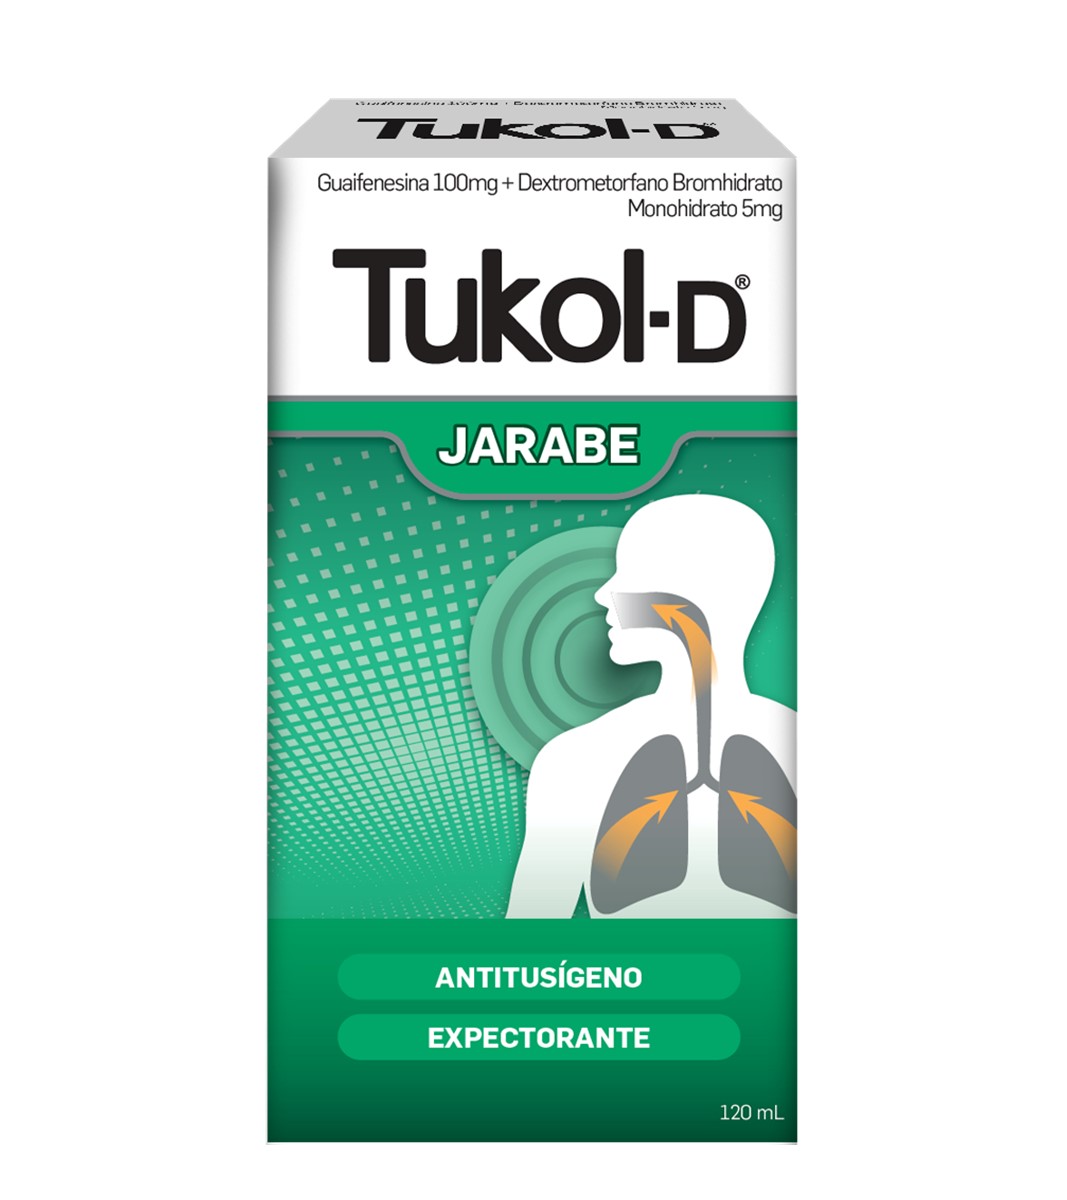 Tukol-D - Frasco 120 ml